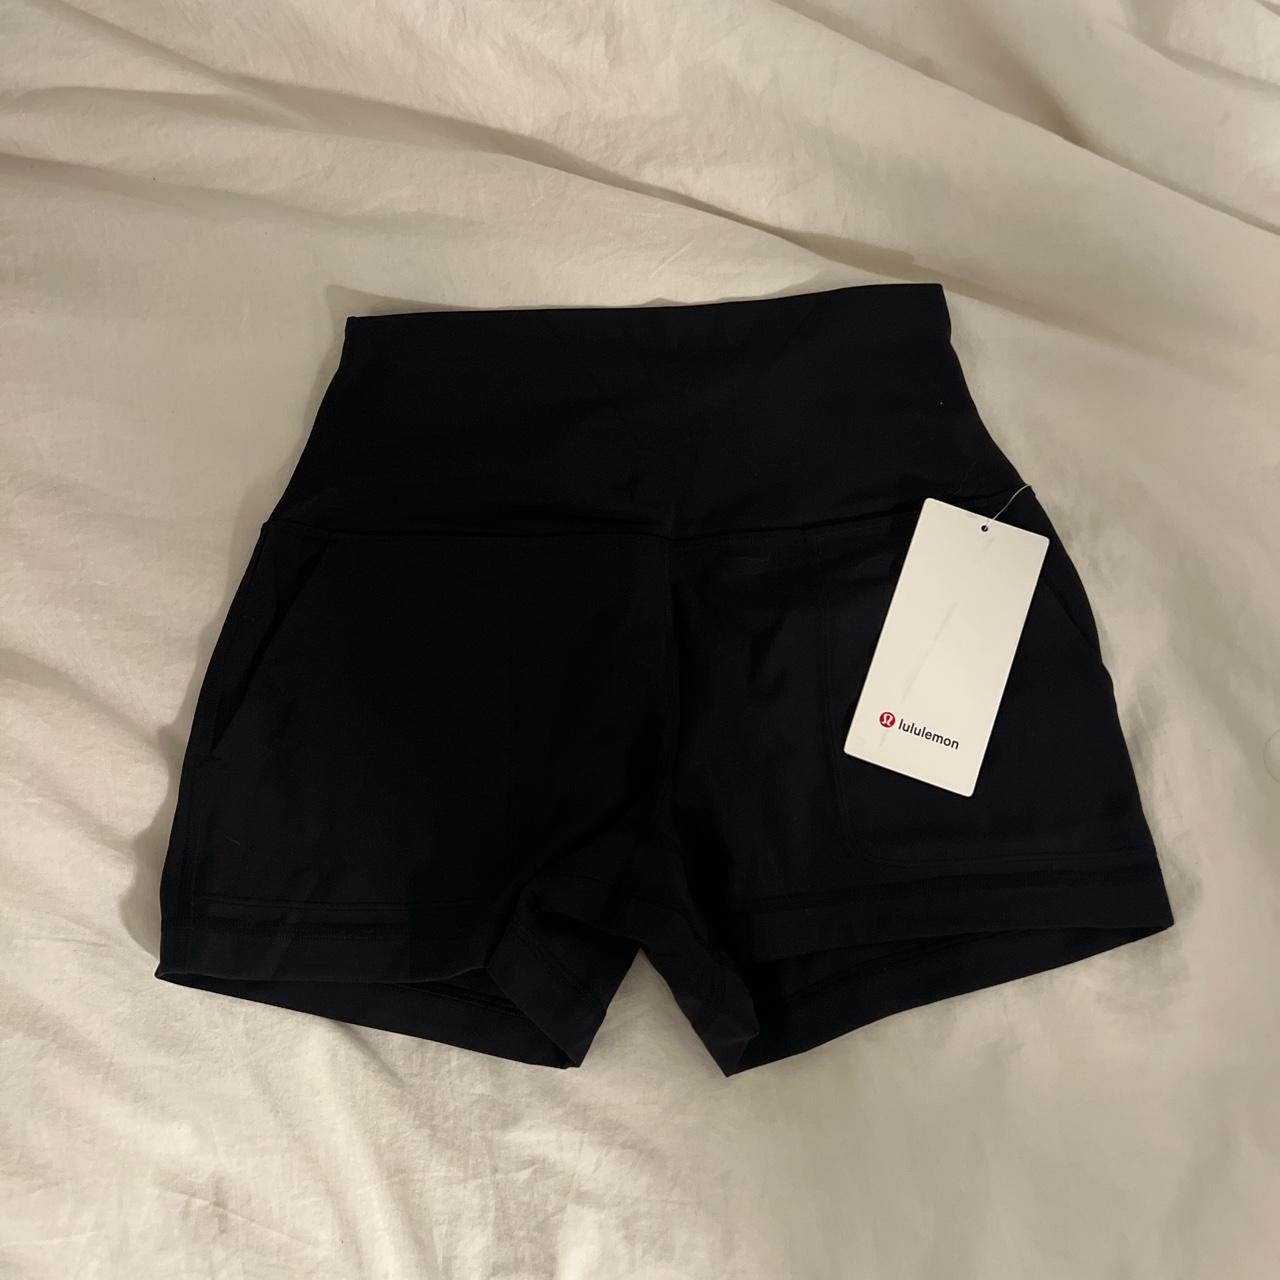 Black nylon-shorts - Depop